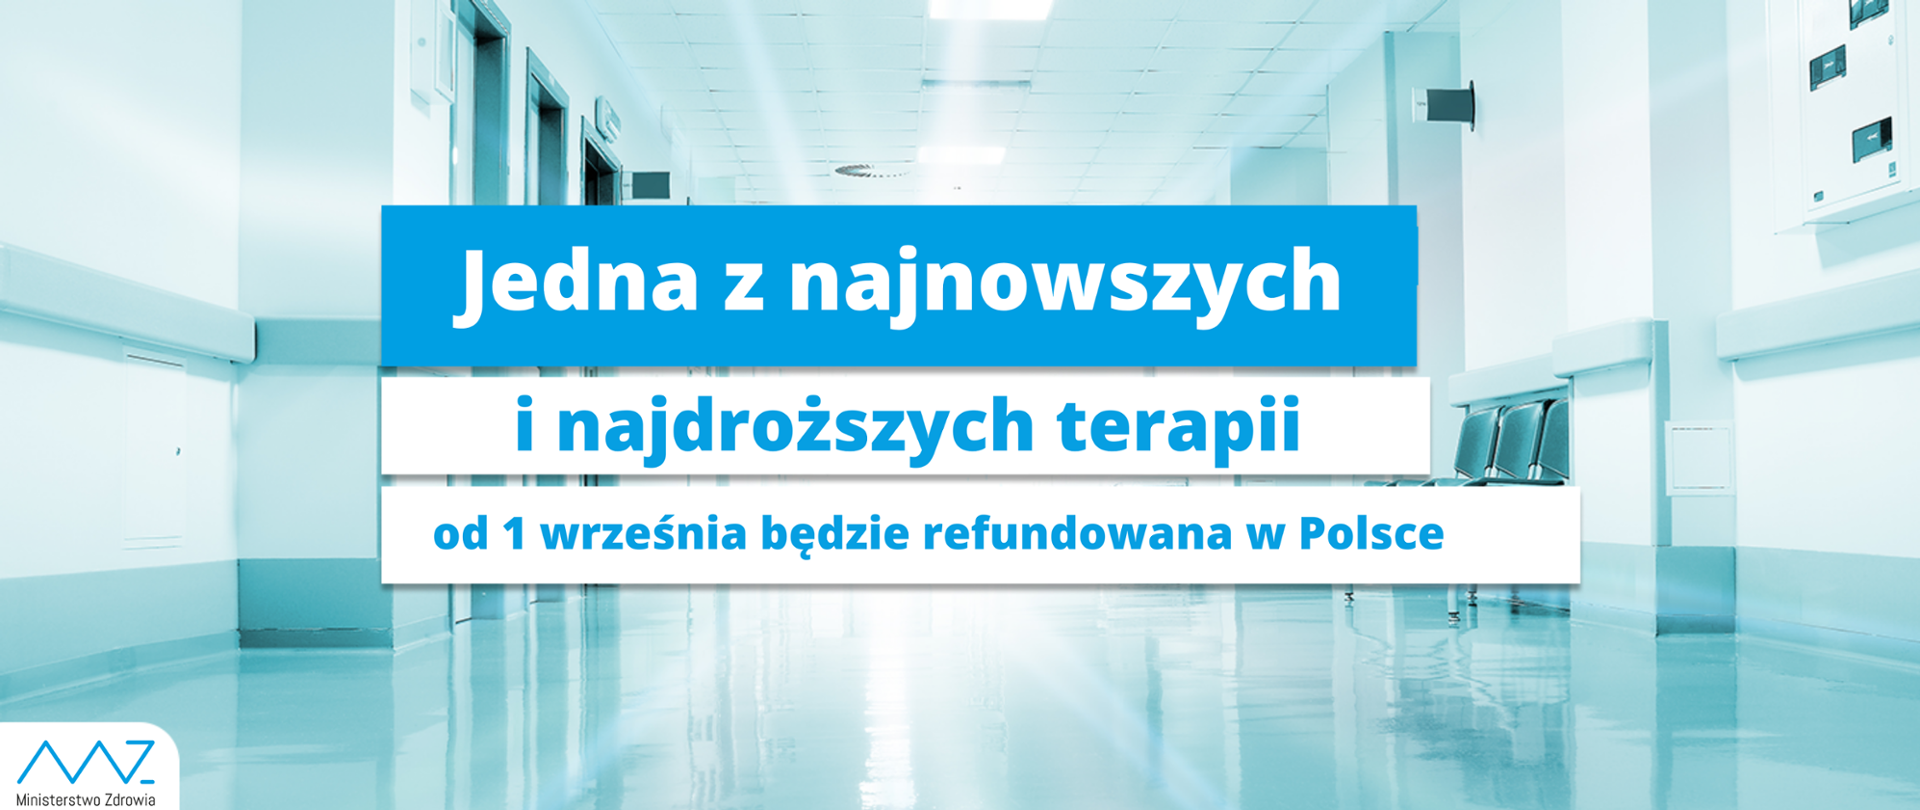 Jedna z najnowszych i najdroższych terapii od 1 września będzie refundowana w Polsce 